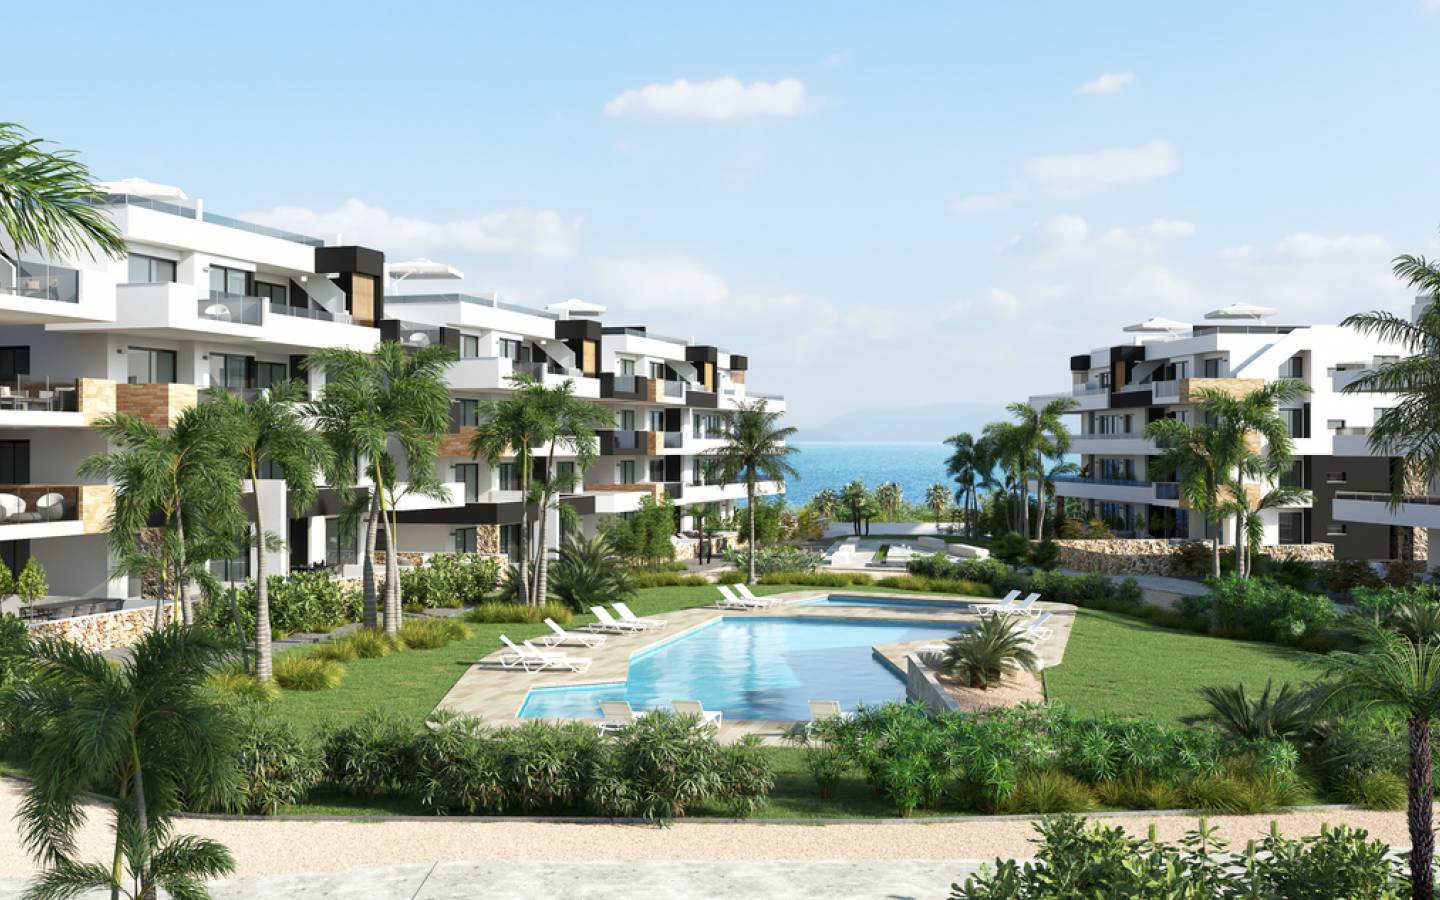 Penthouses à vendre à Playa Flamenca, Orihuela Costa, Costa BlancaLa résidence est composée de 144 logements répartis en 10 blocs de 2 chambres avec vue mer - Photo 0